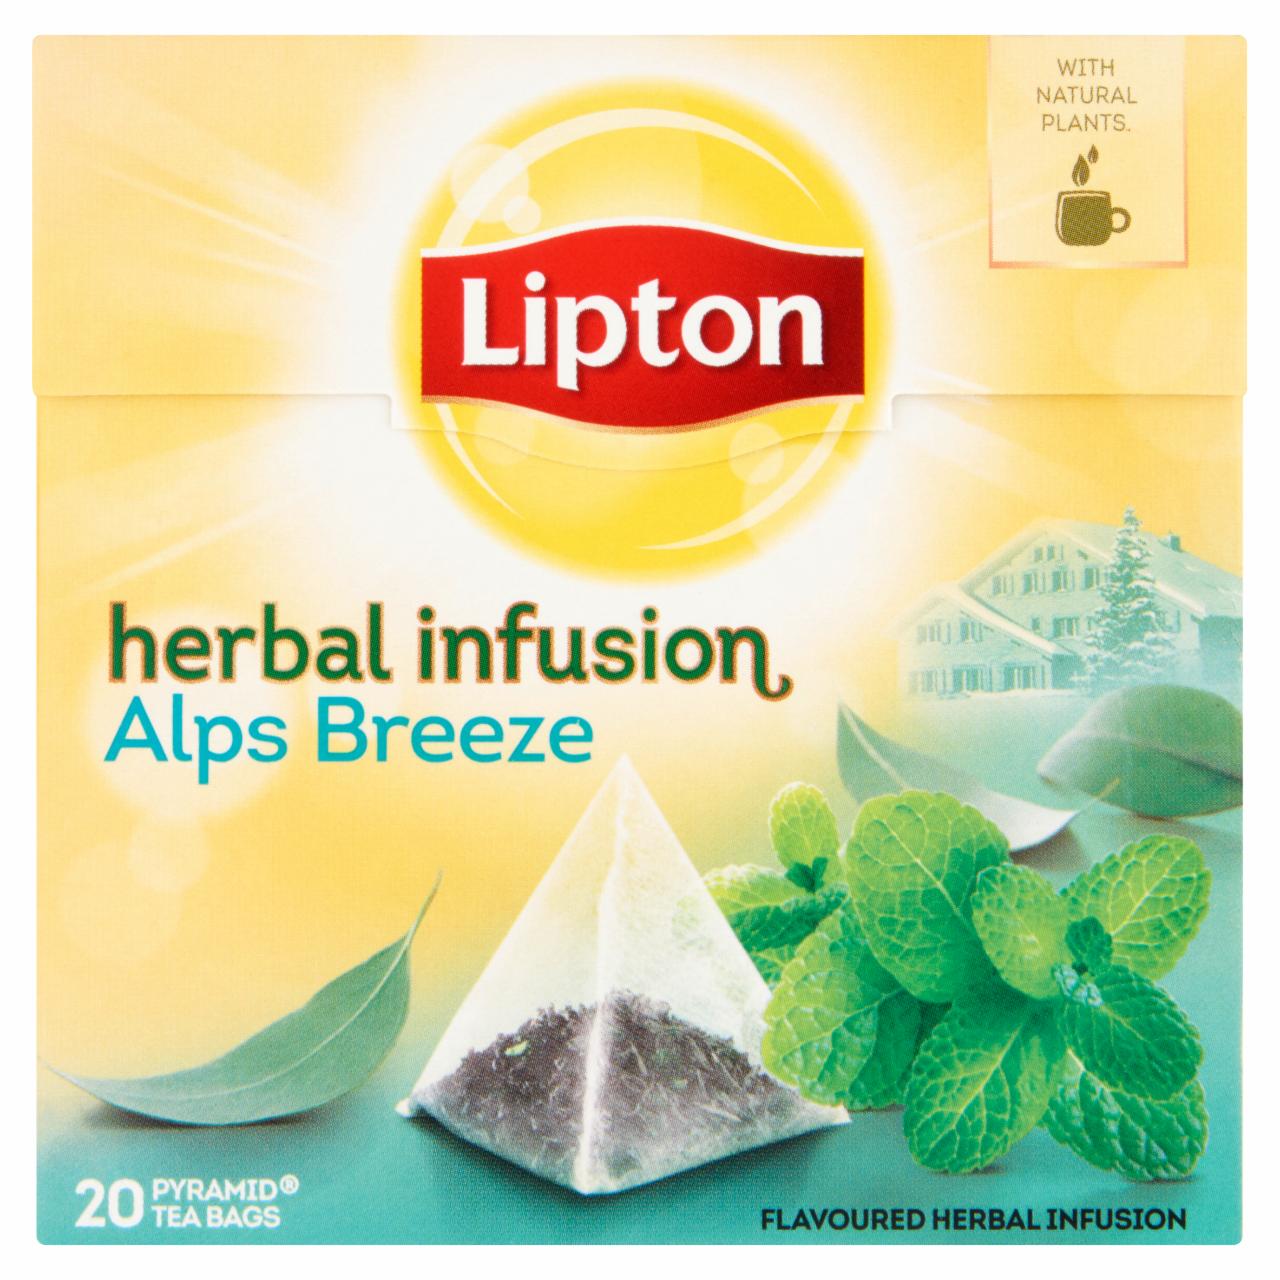 Képek - Lipton Alps Breeze ízesített fodormenta és eukaliptusz tea 20 piramis filter